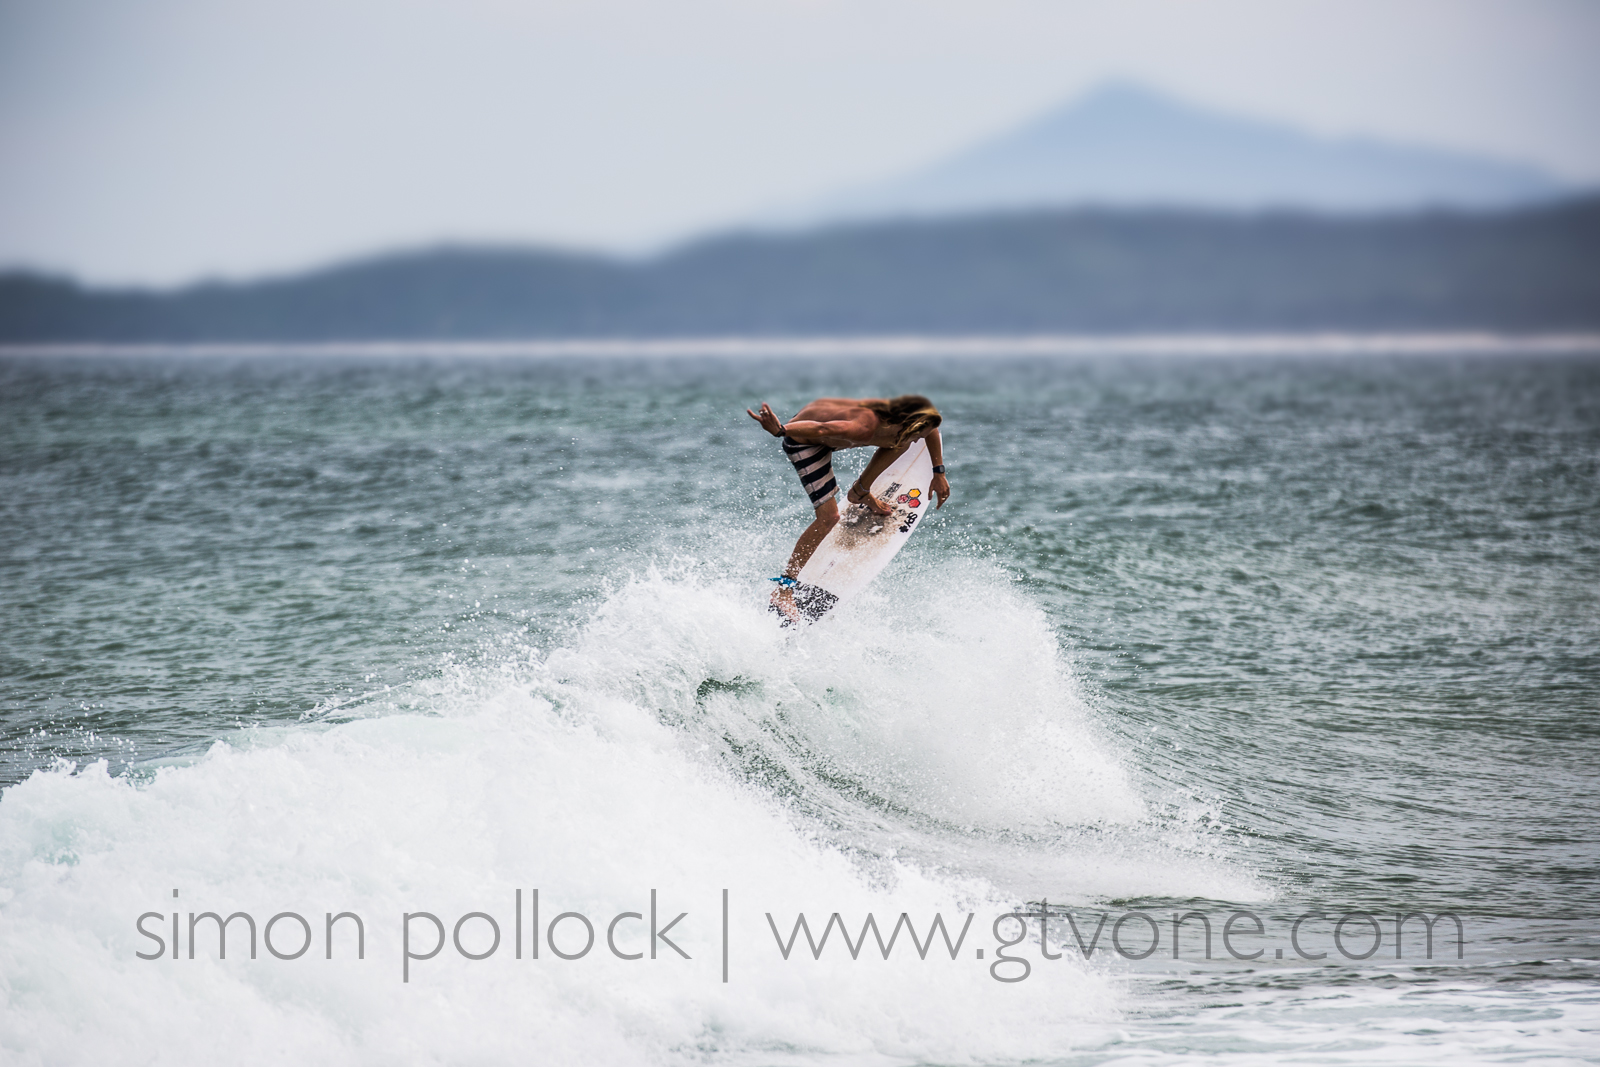 Mitch Pollard surfing Sawtell